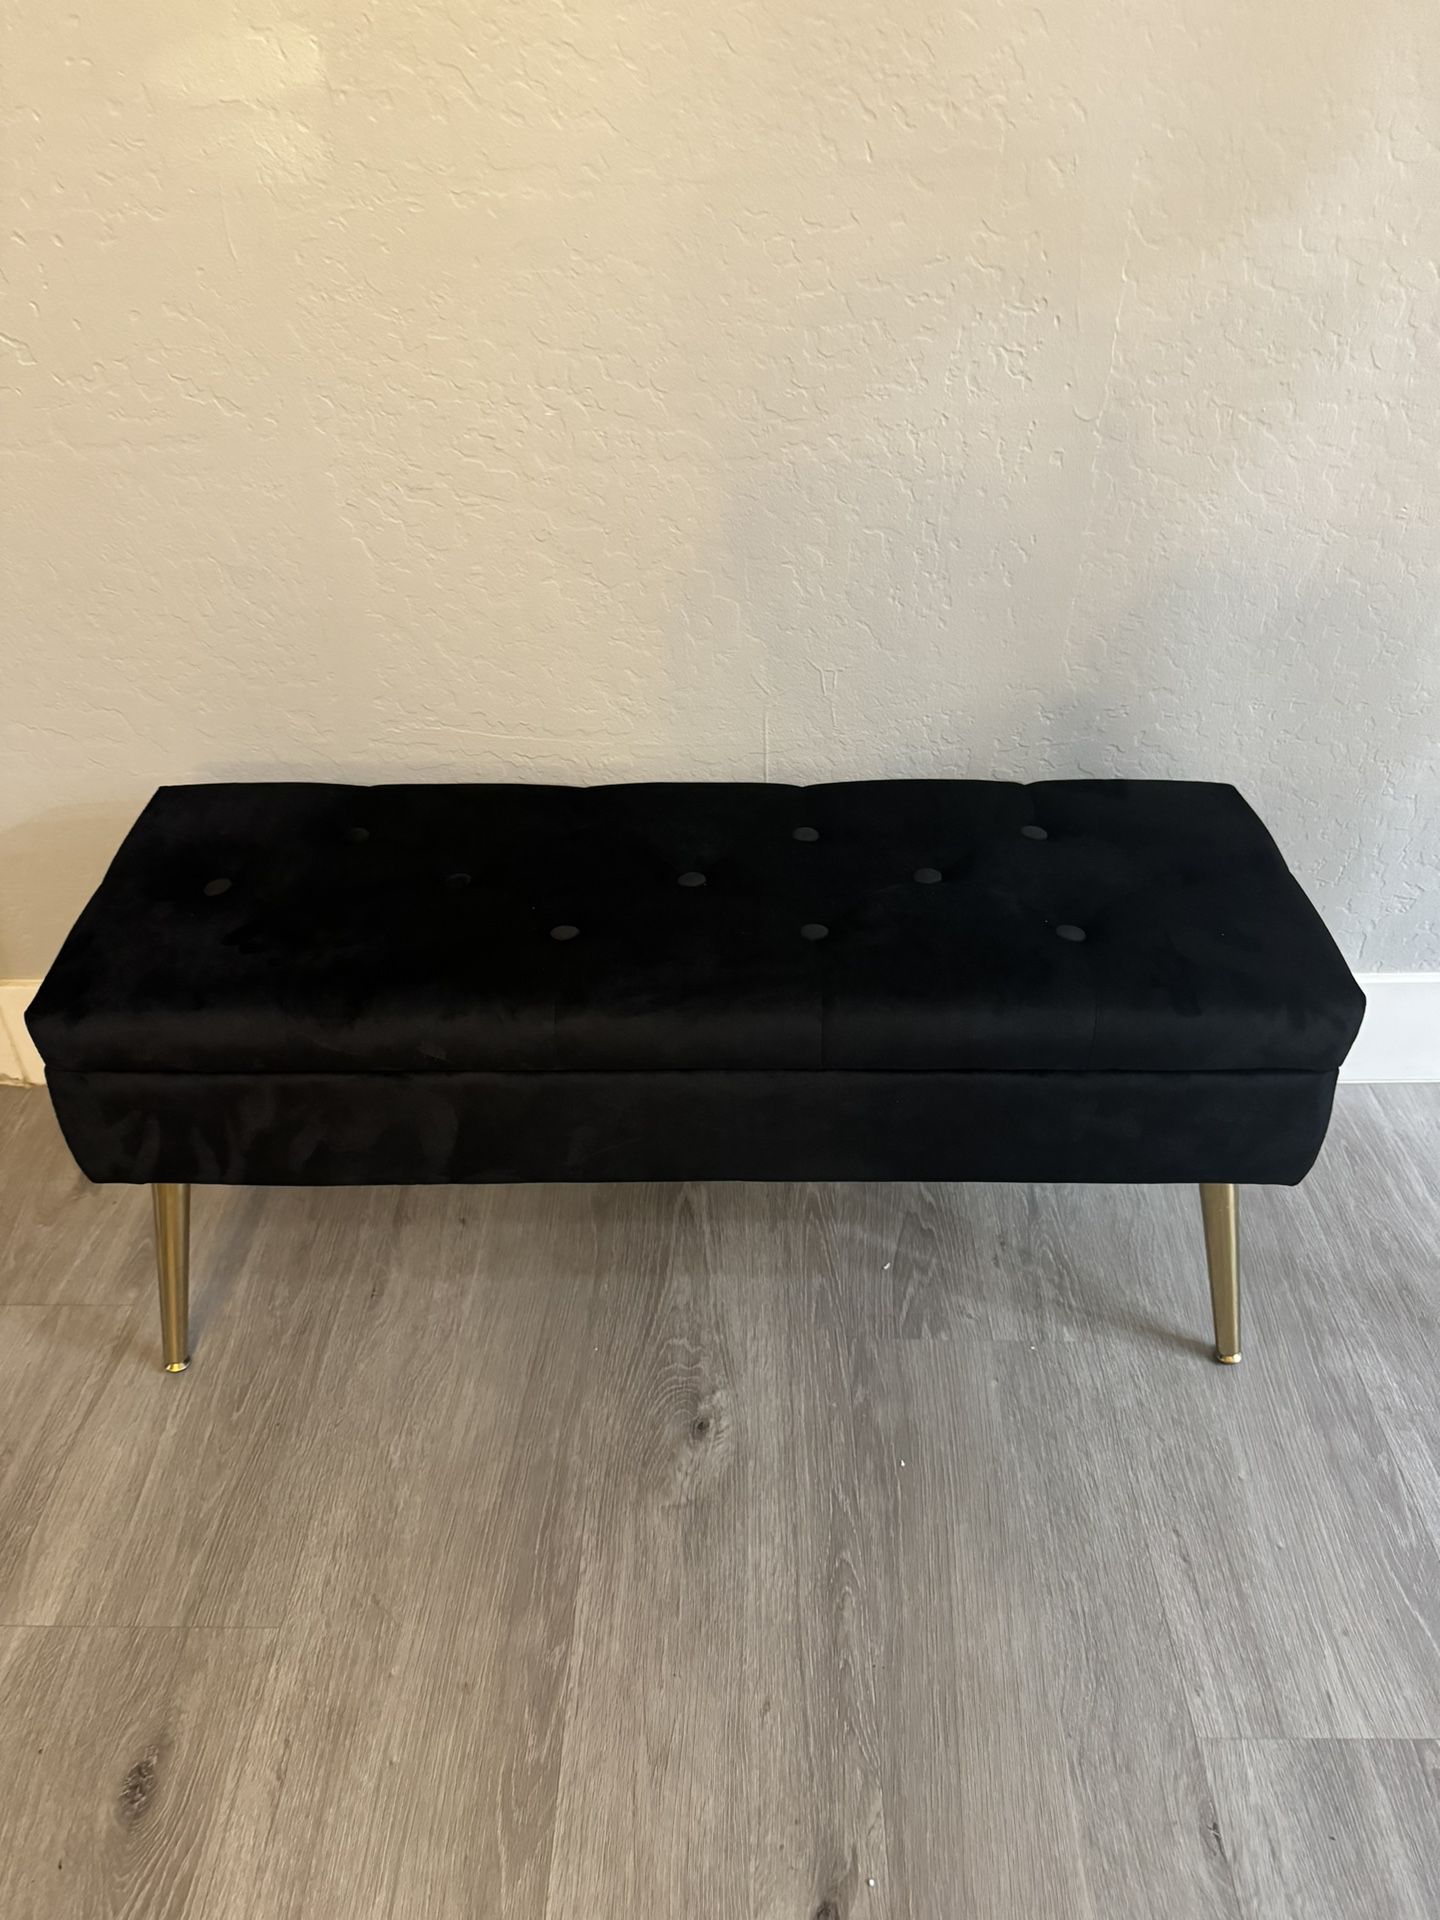 Black Velvet Upholstered Bench With Golden Legs 40"